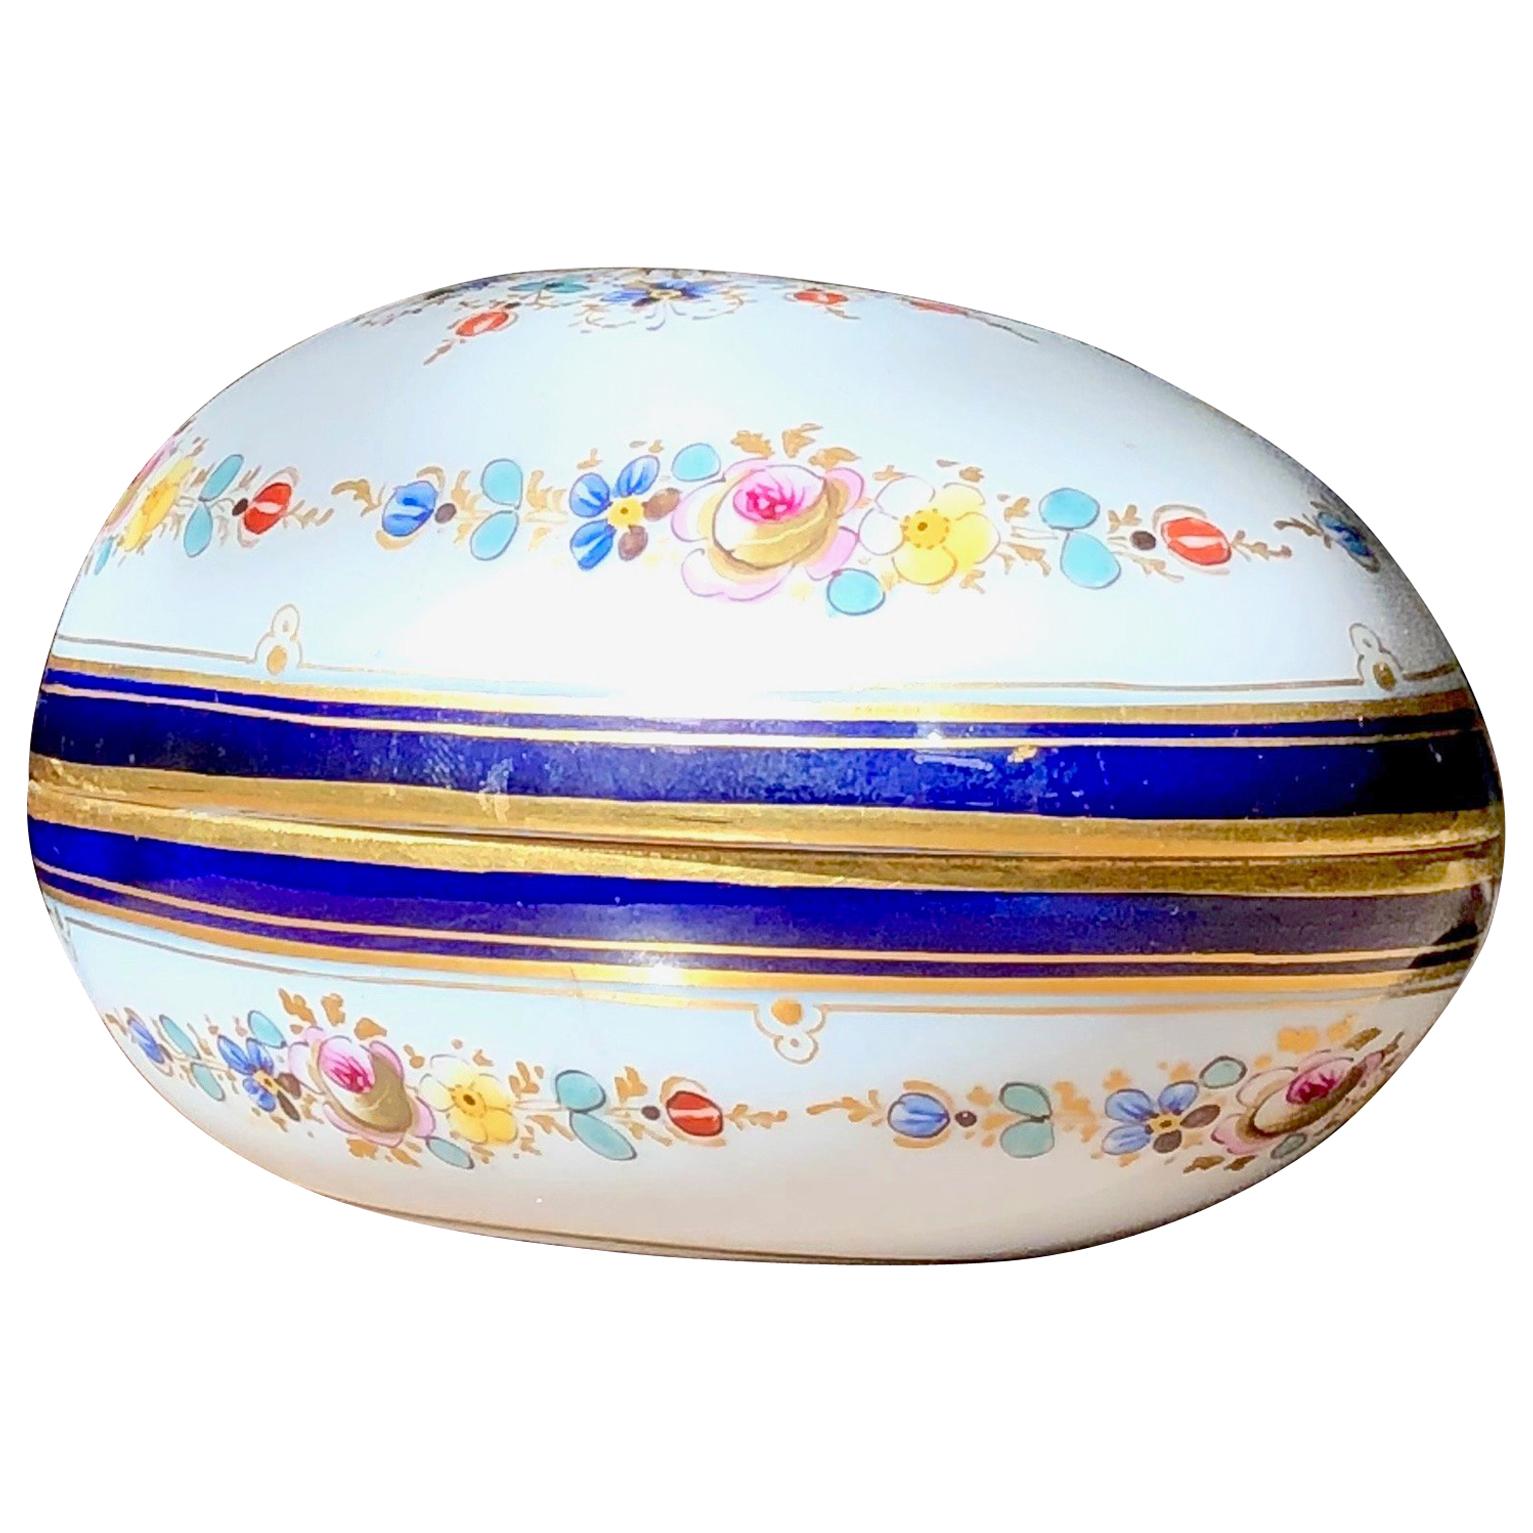 Large Limoges Porcelain Egg shaped trinket box with lid Hand Painted Floral design